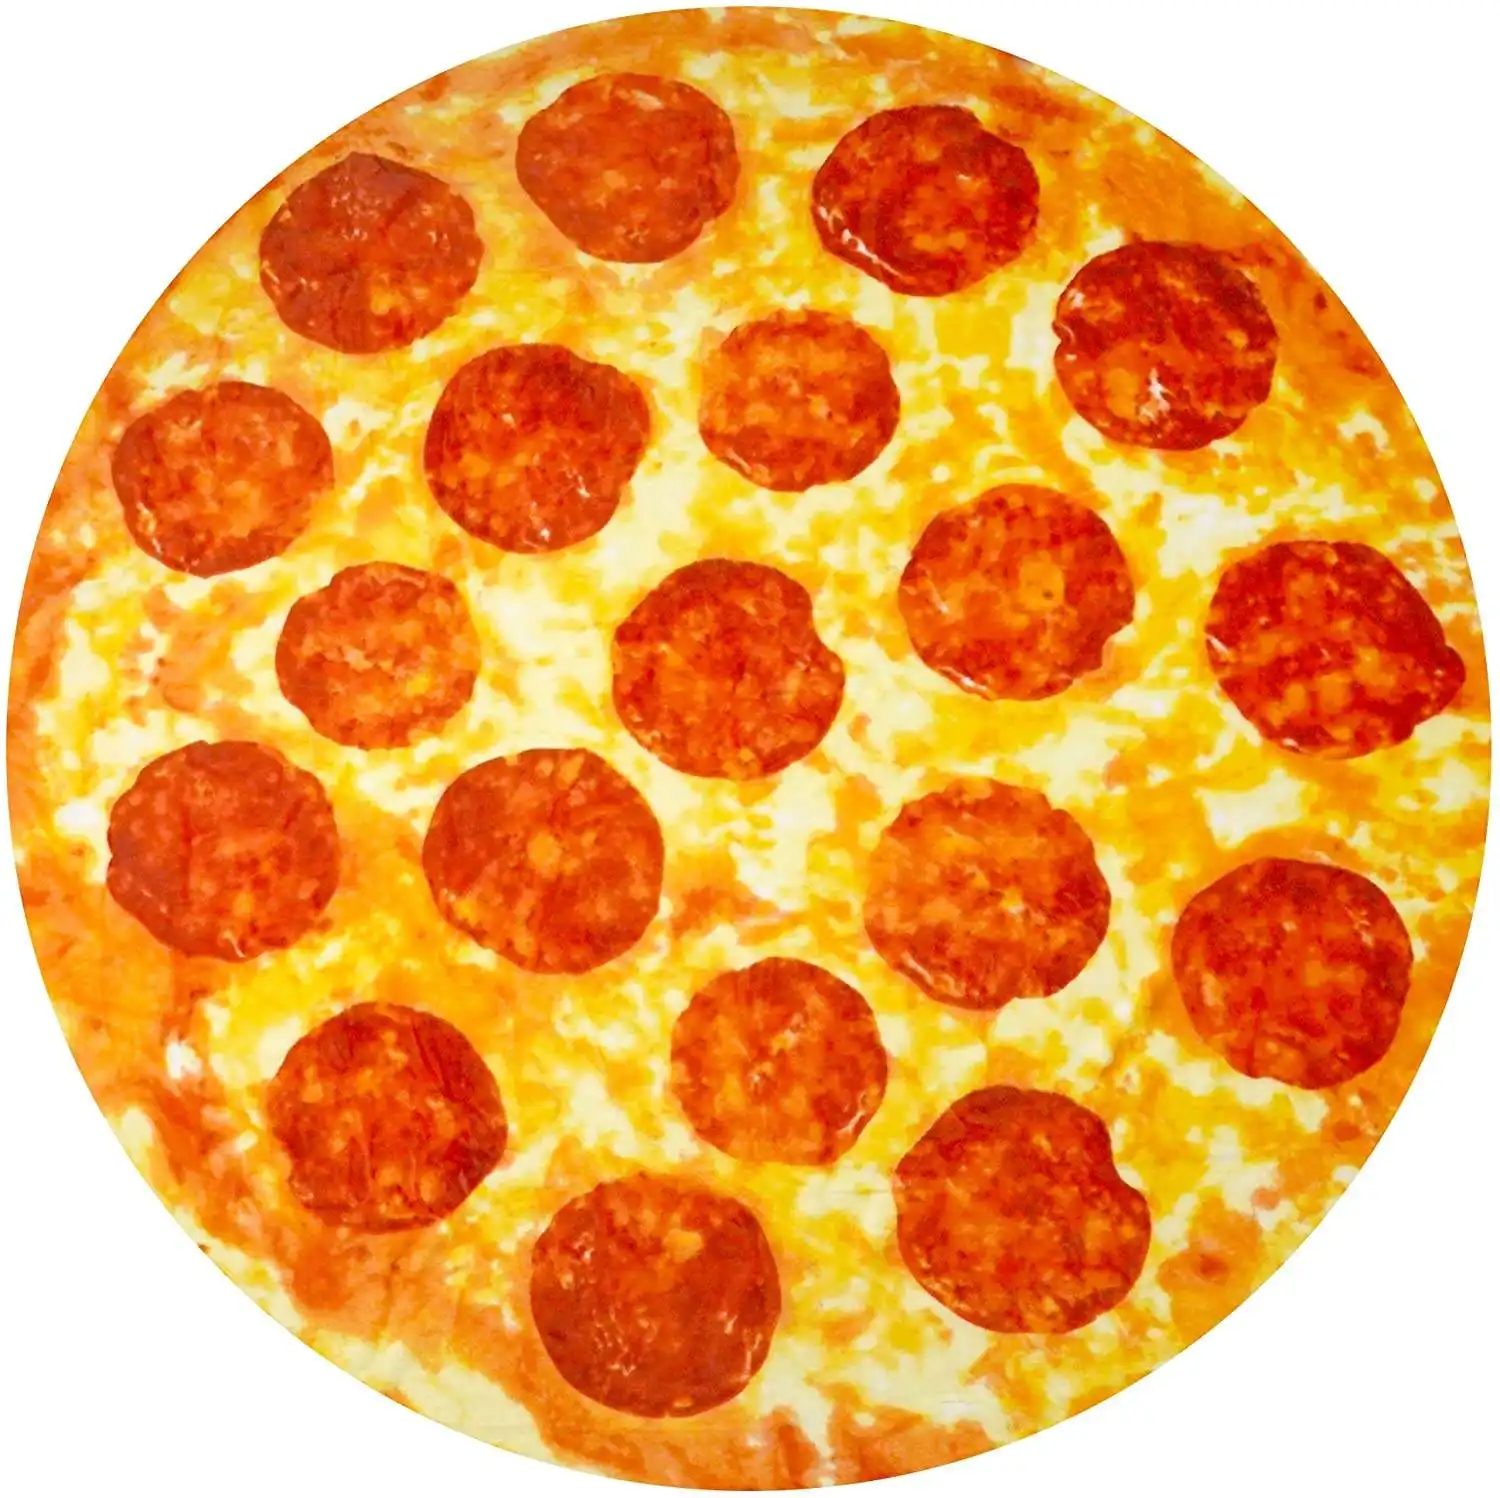 Ücretsiz kargo dayanıklı flanel polar 280gsm 60 80 inç çift taraflı özel baskılı gıda şekli Tortilla Pizza atmak battaniye 2.0